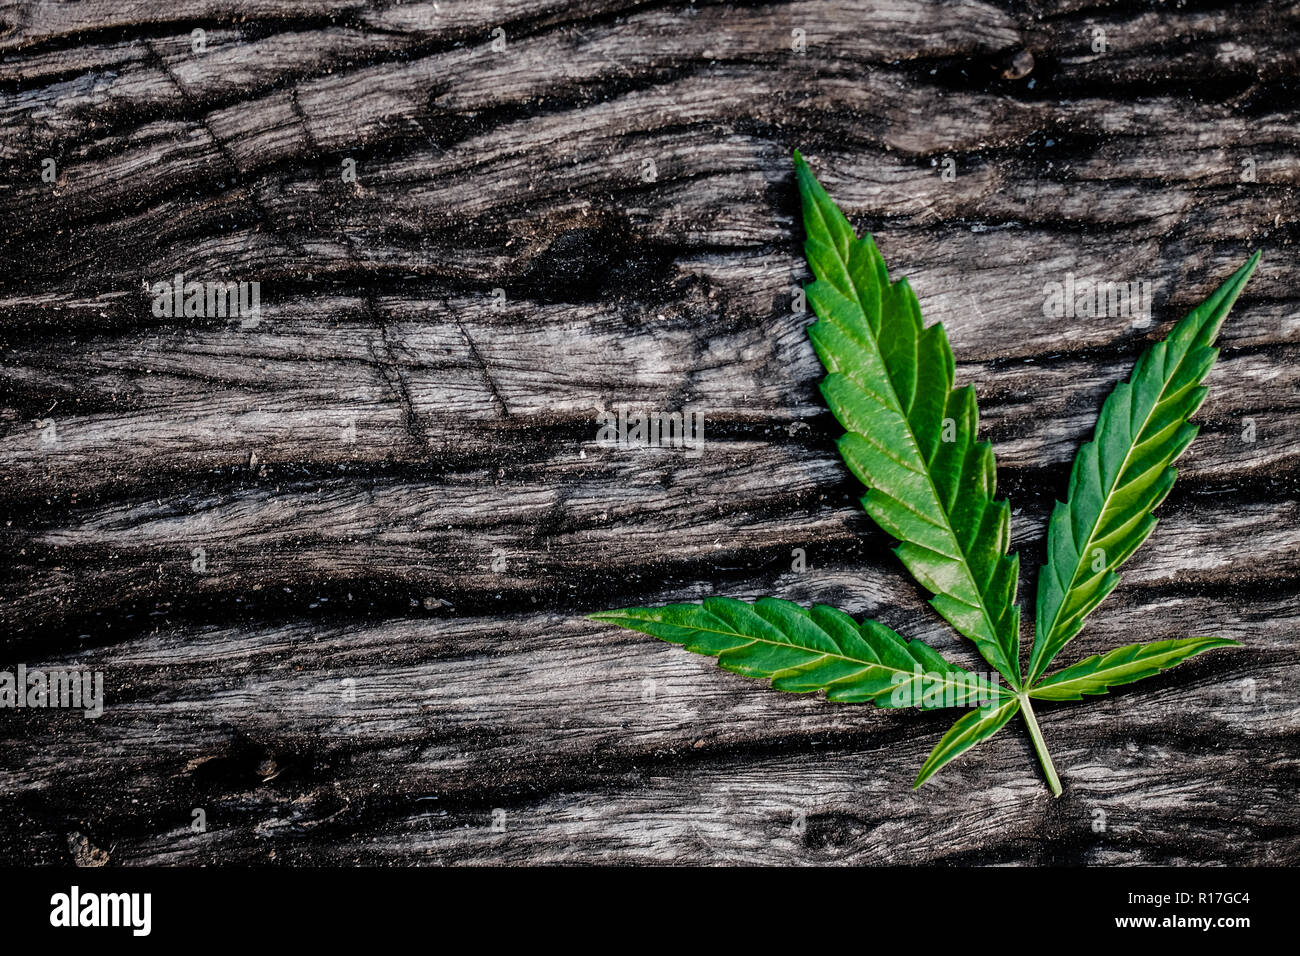 marijuana joint weed smoking close up on background Stock Photo - Alamy